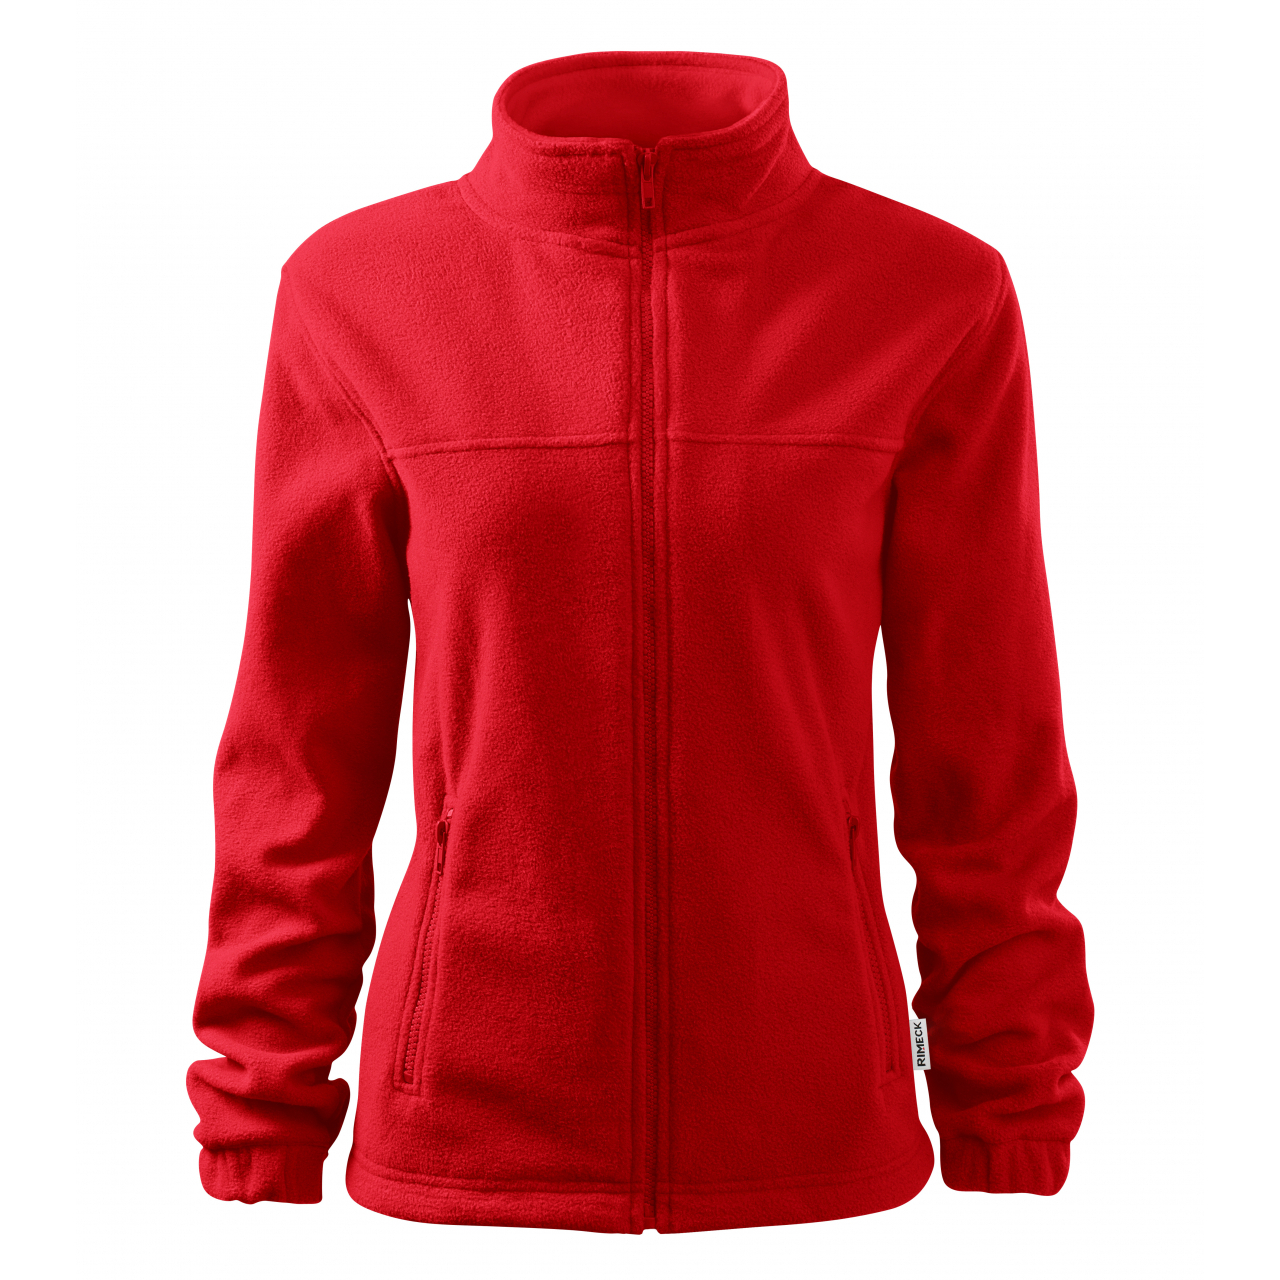 Mikina dámská fleecová Rimeck Jacket 504 - červená, L